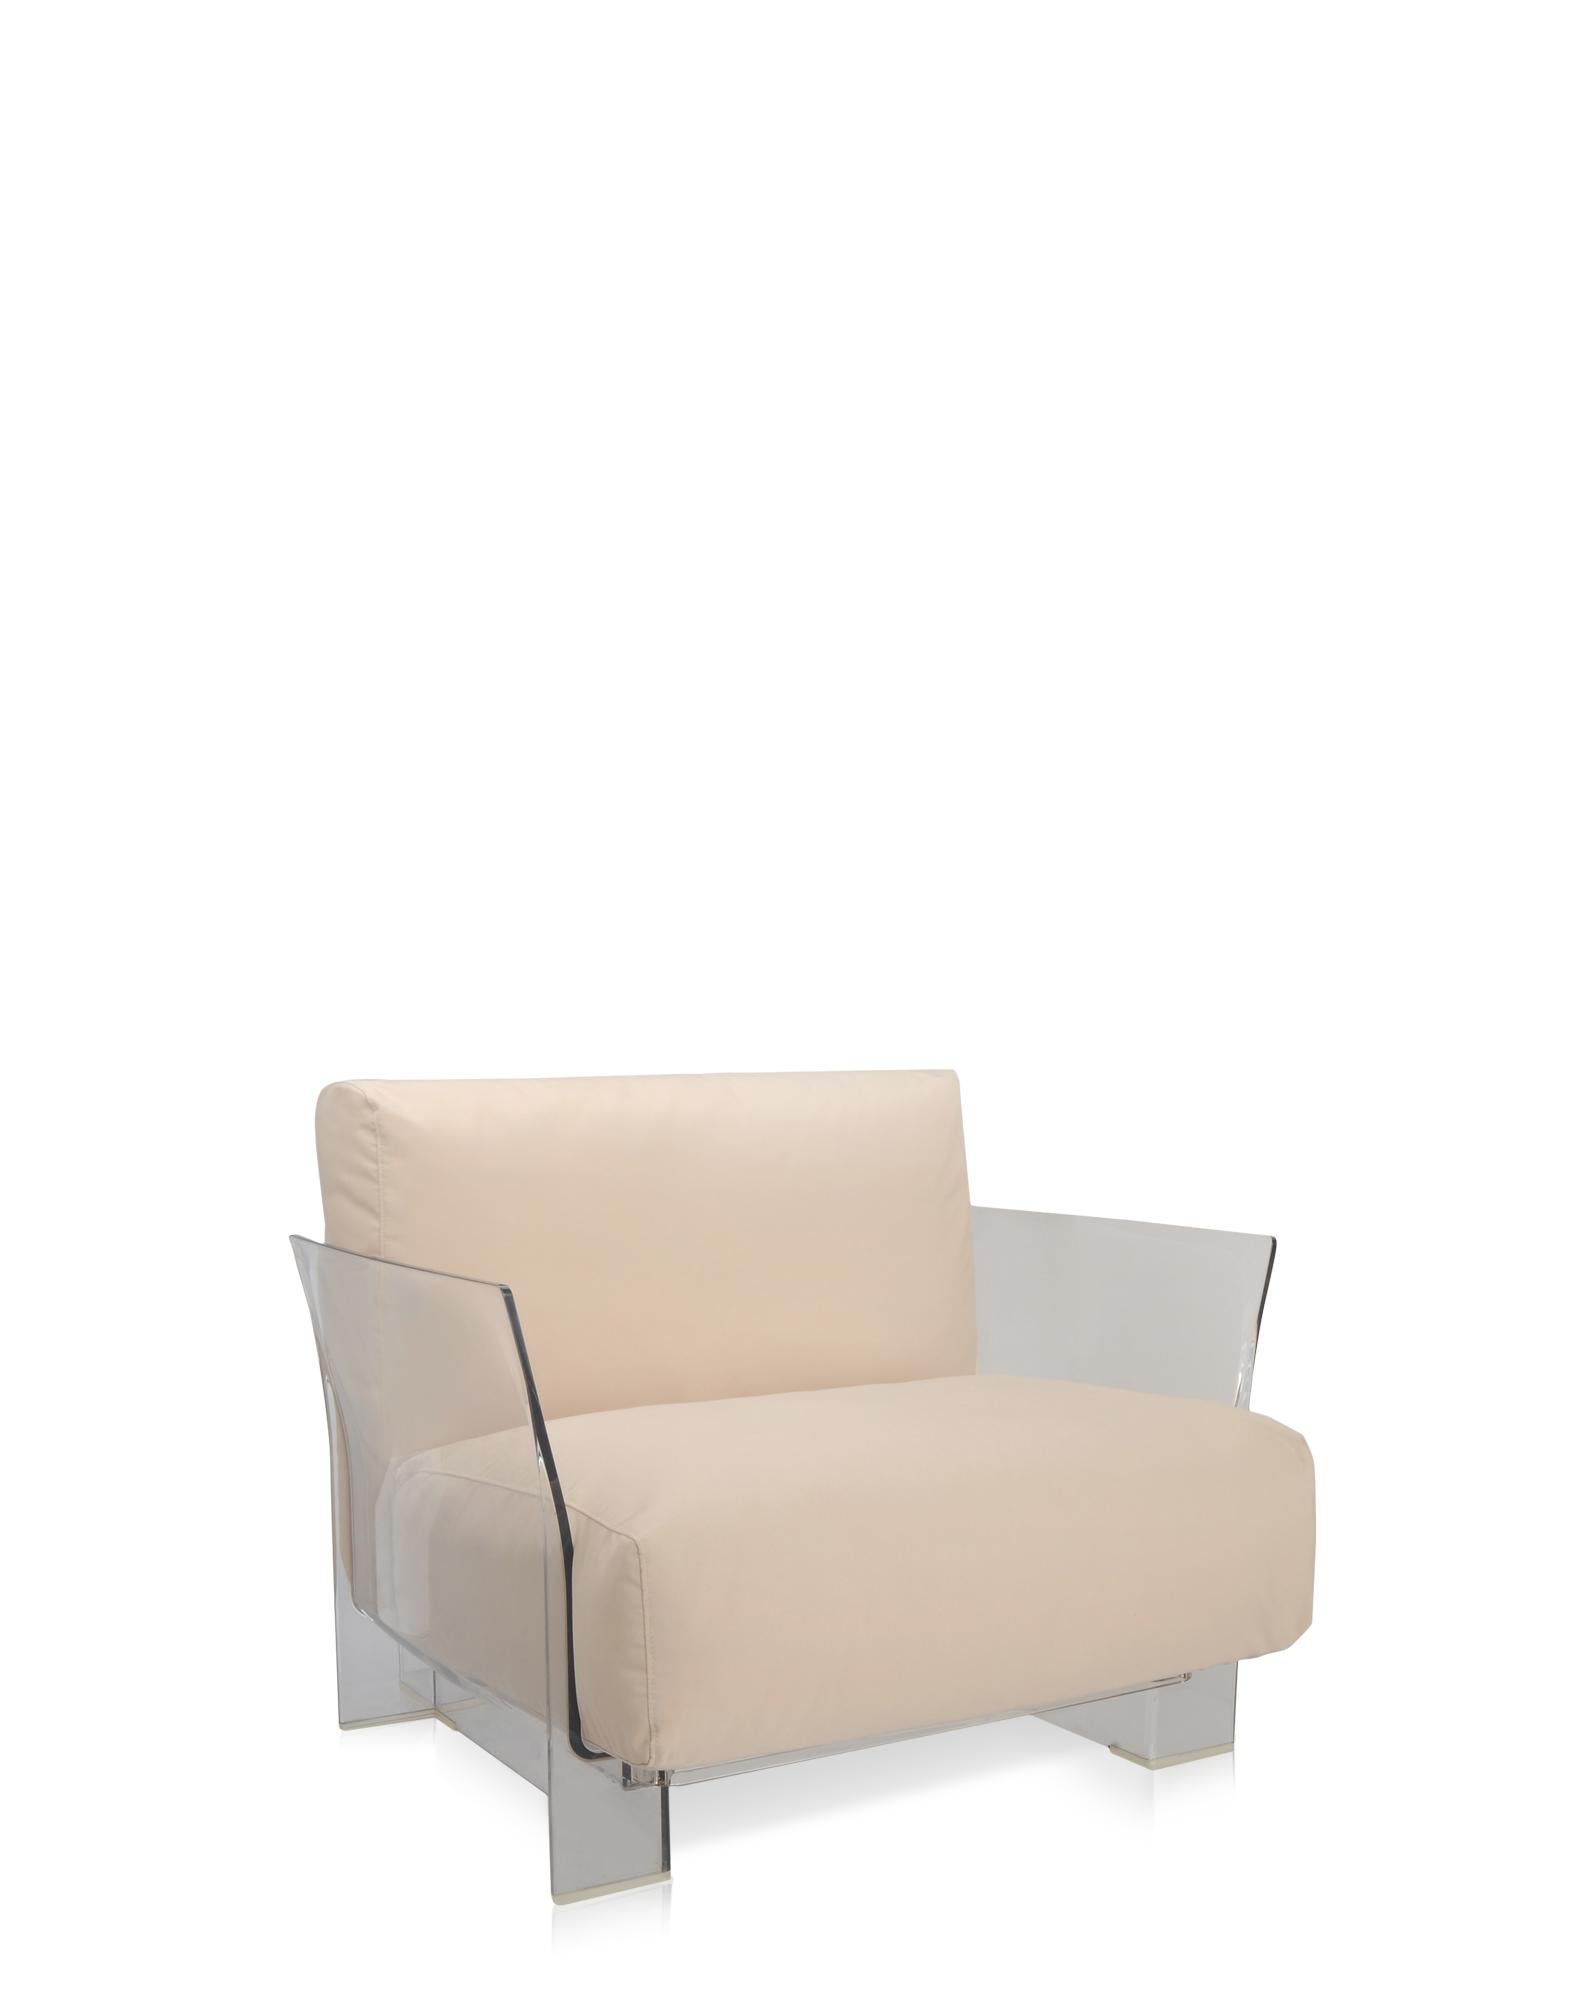 Pop outdoor ist das modulare Sofa mit flüchtigen Profilen, das sich durch große Sitz- und Rückenkissen auszeichnet, die es weich und bequem machen. Es wird mit Stoffen hergestellt, die speziell für den Außenbereich konzipiert wurden. 
Die